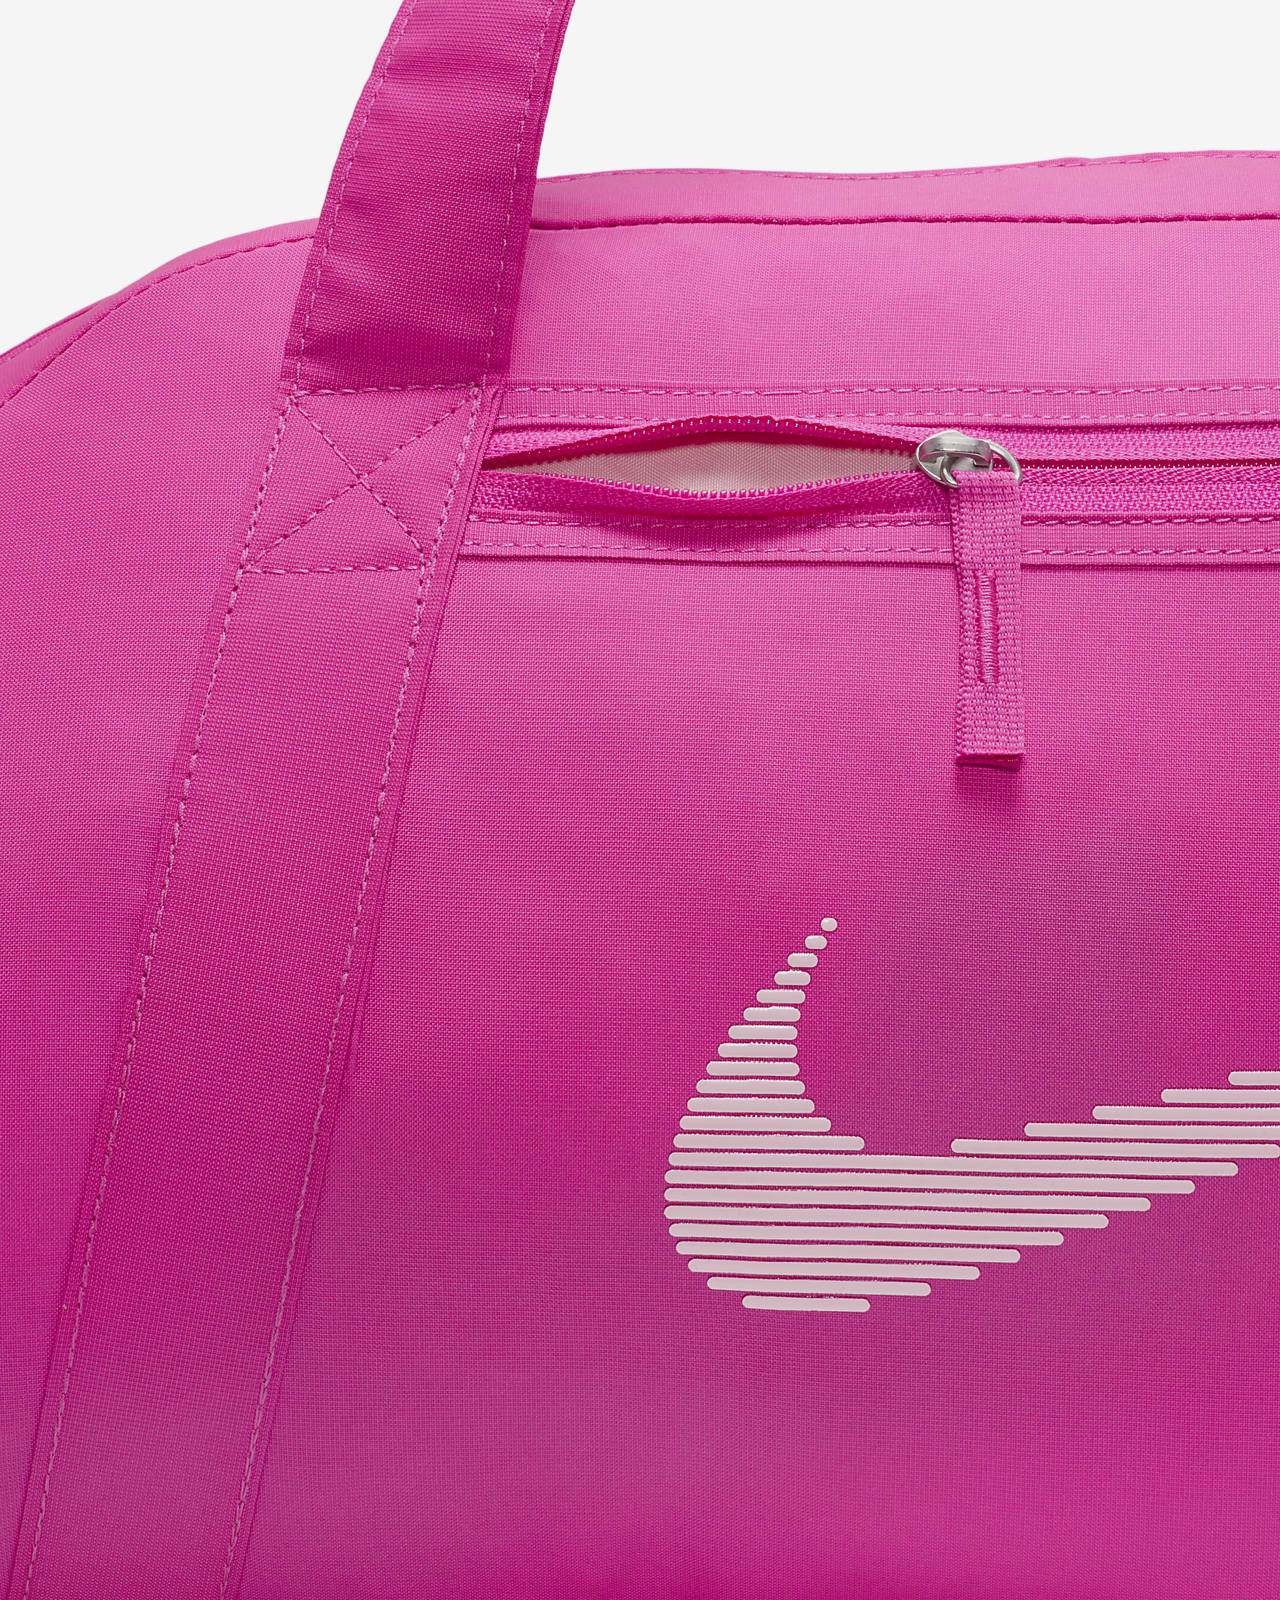 Nike Gym Club Retro Women's Training Bag Sports Yoga Duffle Bag